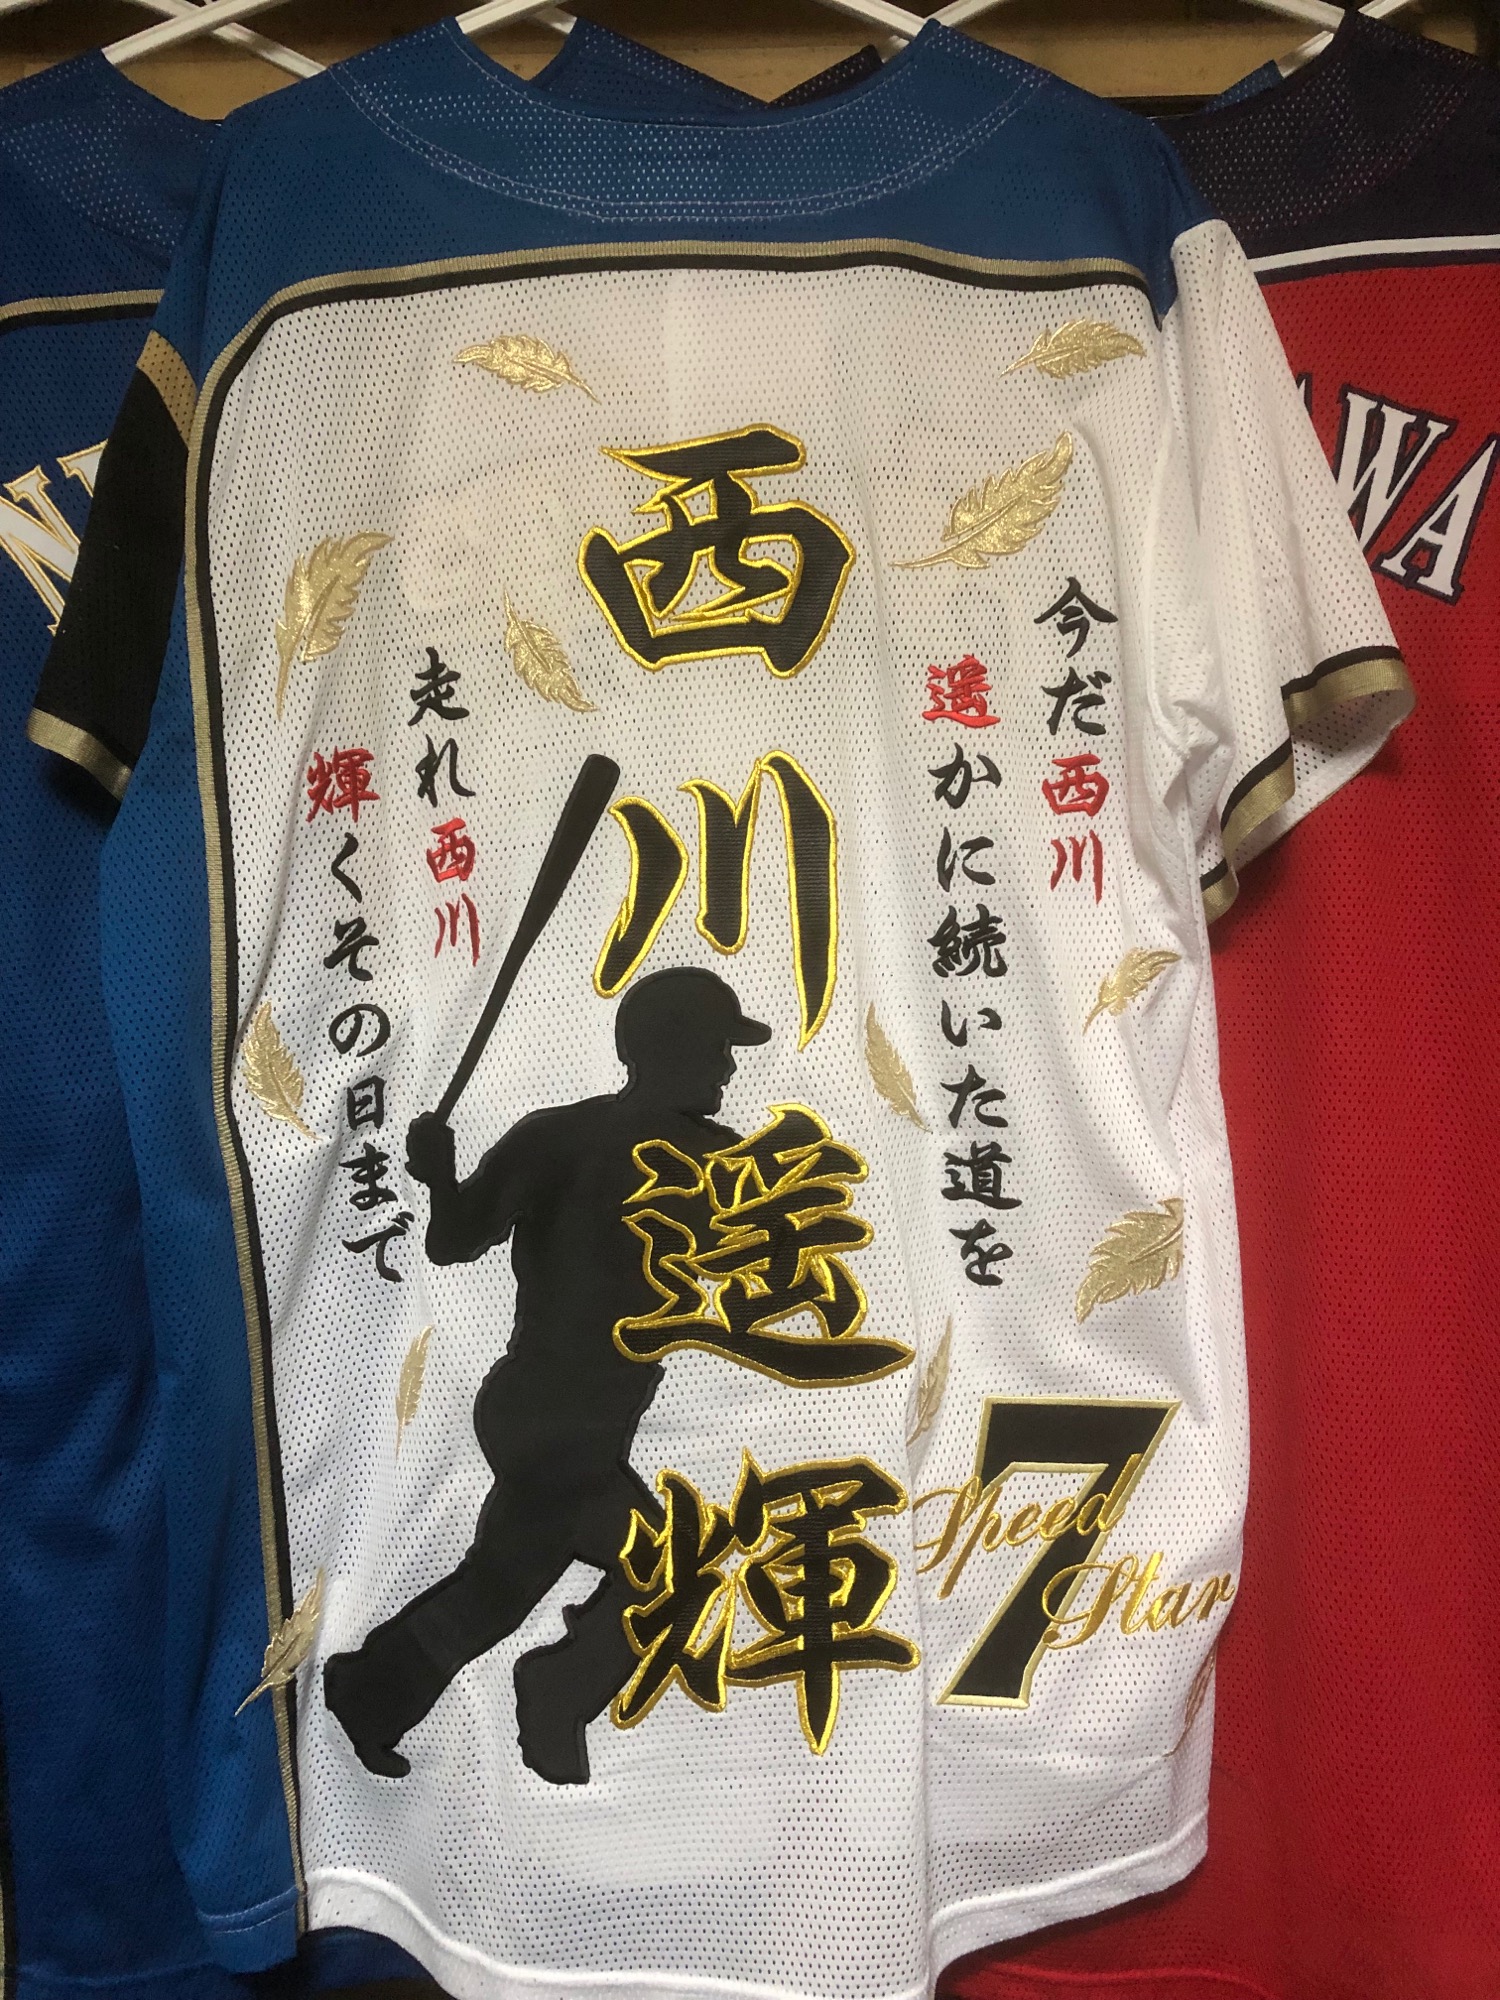 北海道日本ハムファイターズ 西川遥輝選手の刺繍ユニフォーム